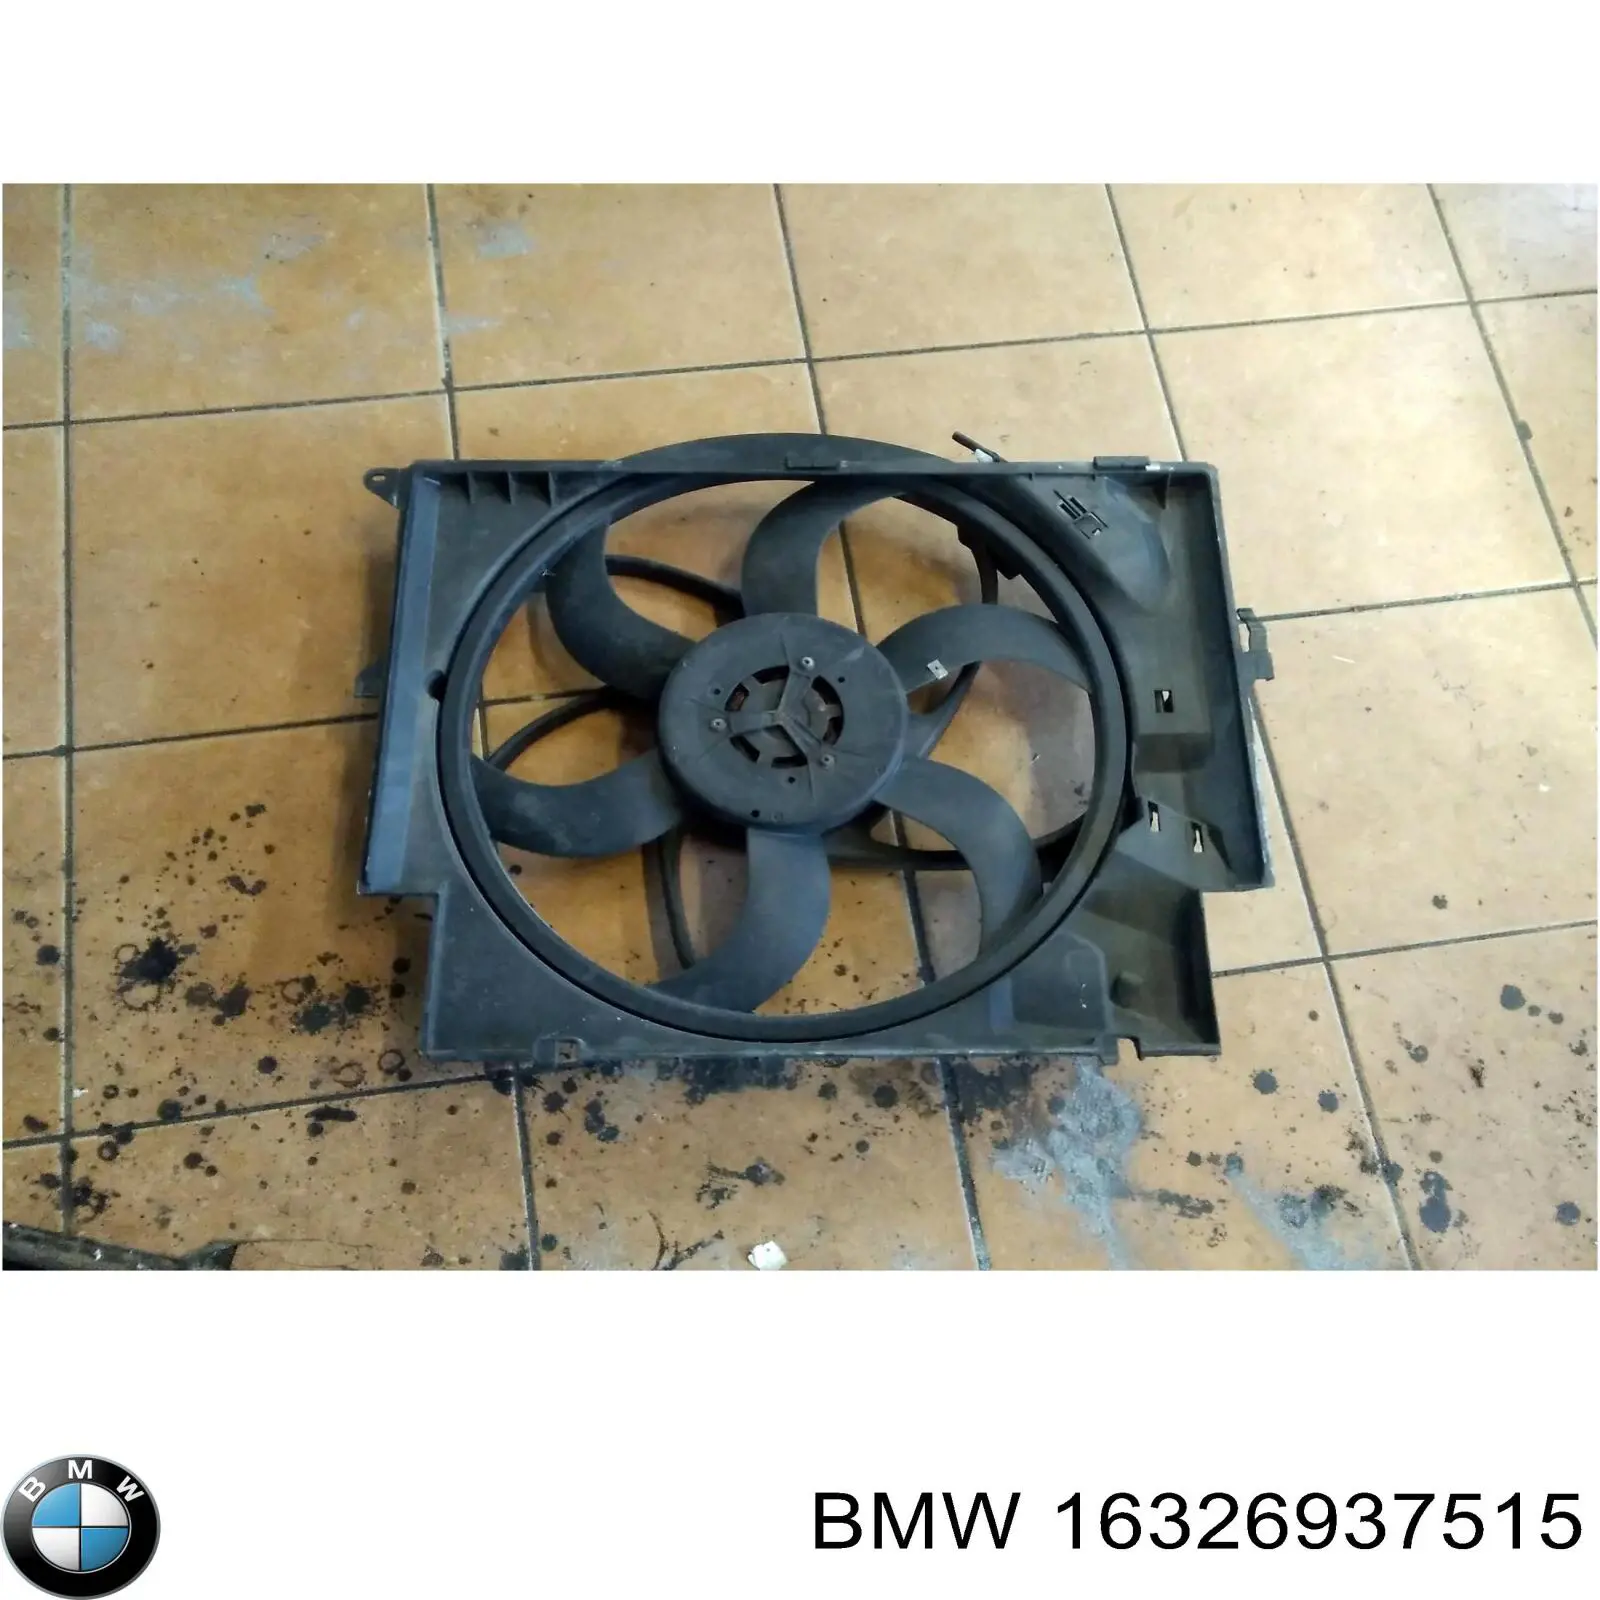 16326937515 BMW difusor do radiador de esfriamento, montado com motor e roda de aletas